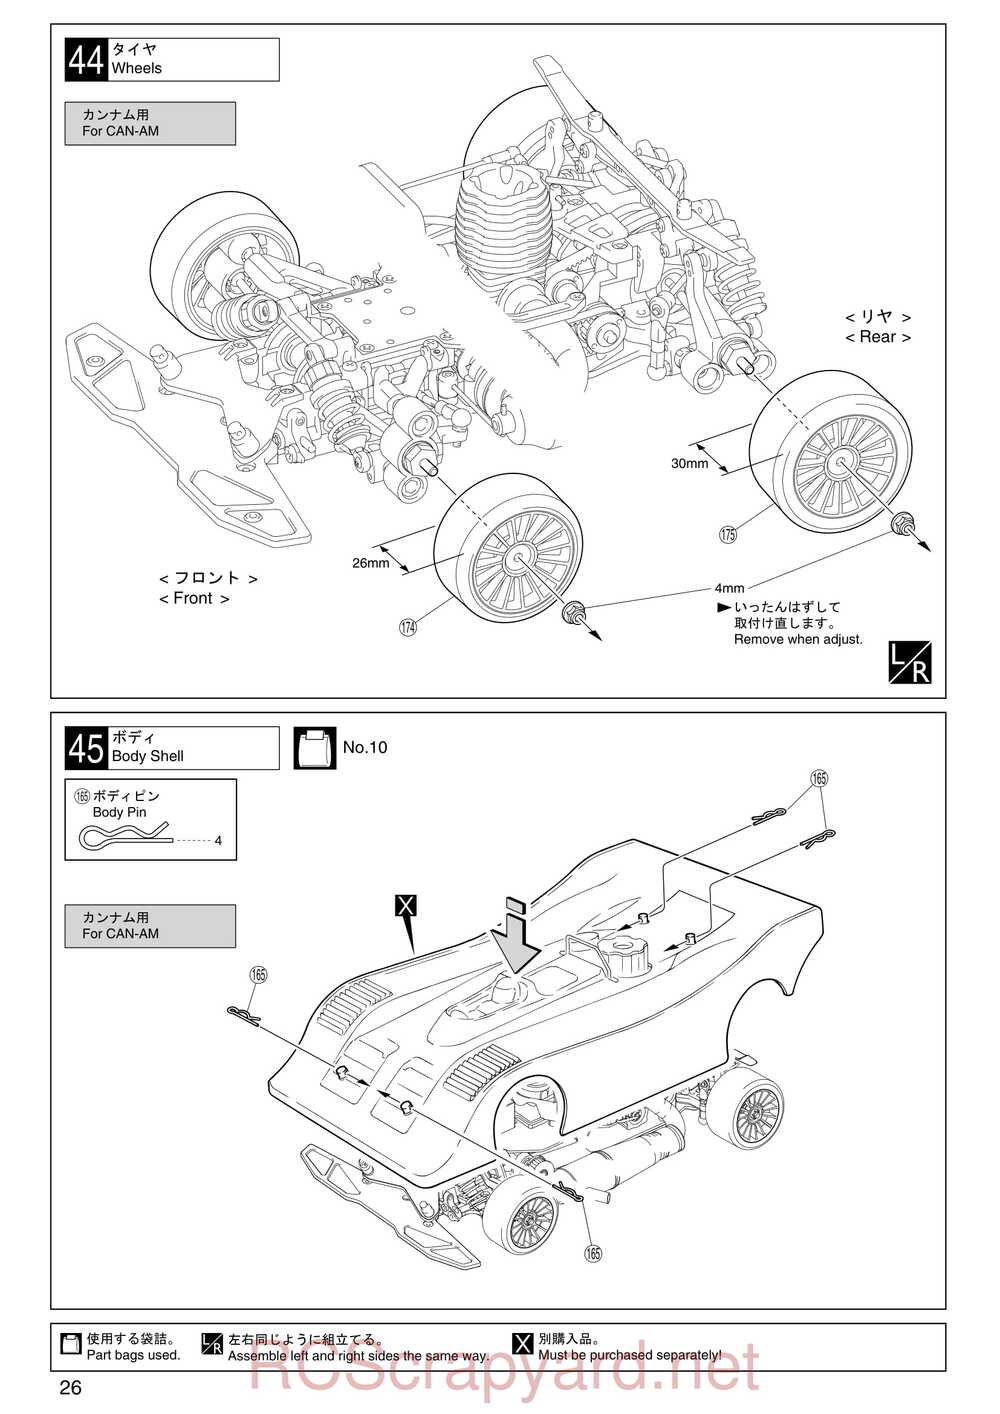 Kyosho - 31255 - V-One RR Evolution - Manual - Page 26